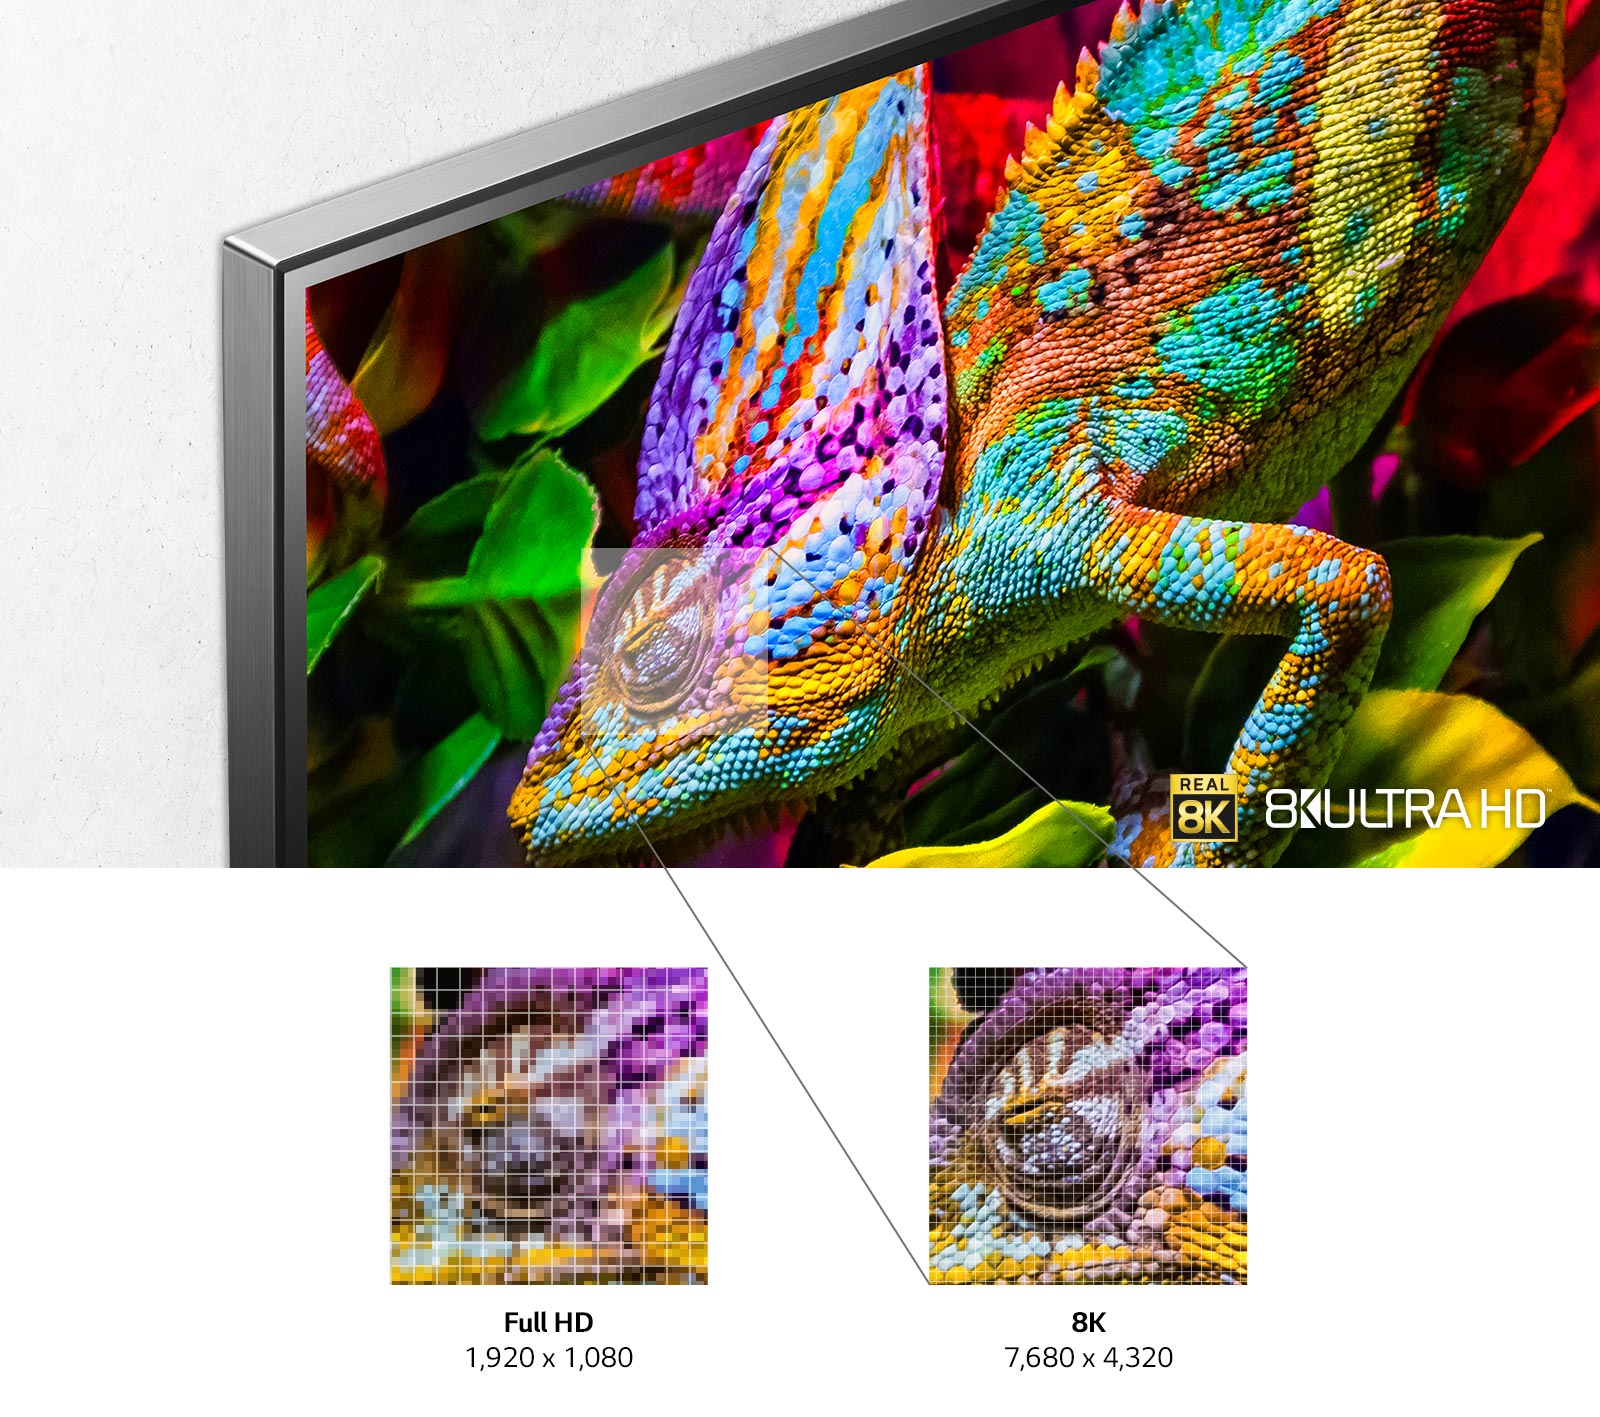 Der obere linke Bereich eines TV-Bildschirms zeigt ein farbenfrohes Chamäleon vor einem blattreichen Hintergrund. Unterhalb des Bildes sind kleinere Bilder des Chamäleonauges zu sehen, die im Detail den Unterschied zwischen Full HD und der 8K-Auflösung verdeutlichen.